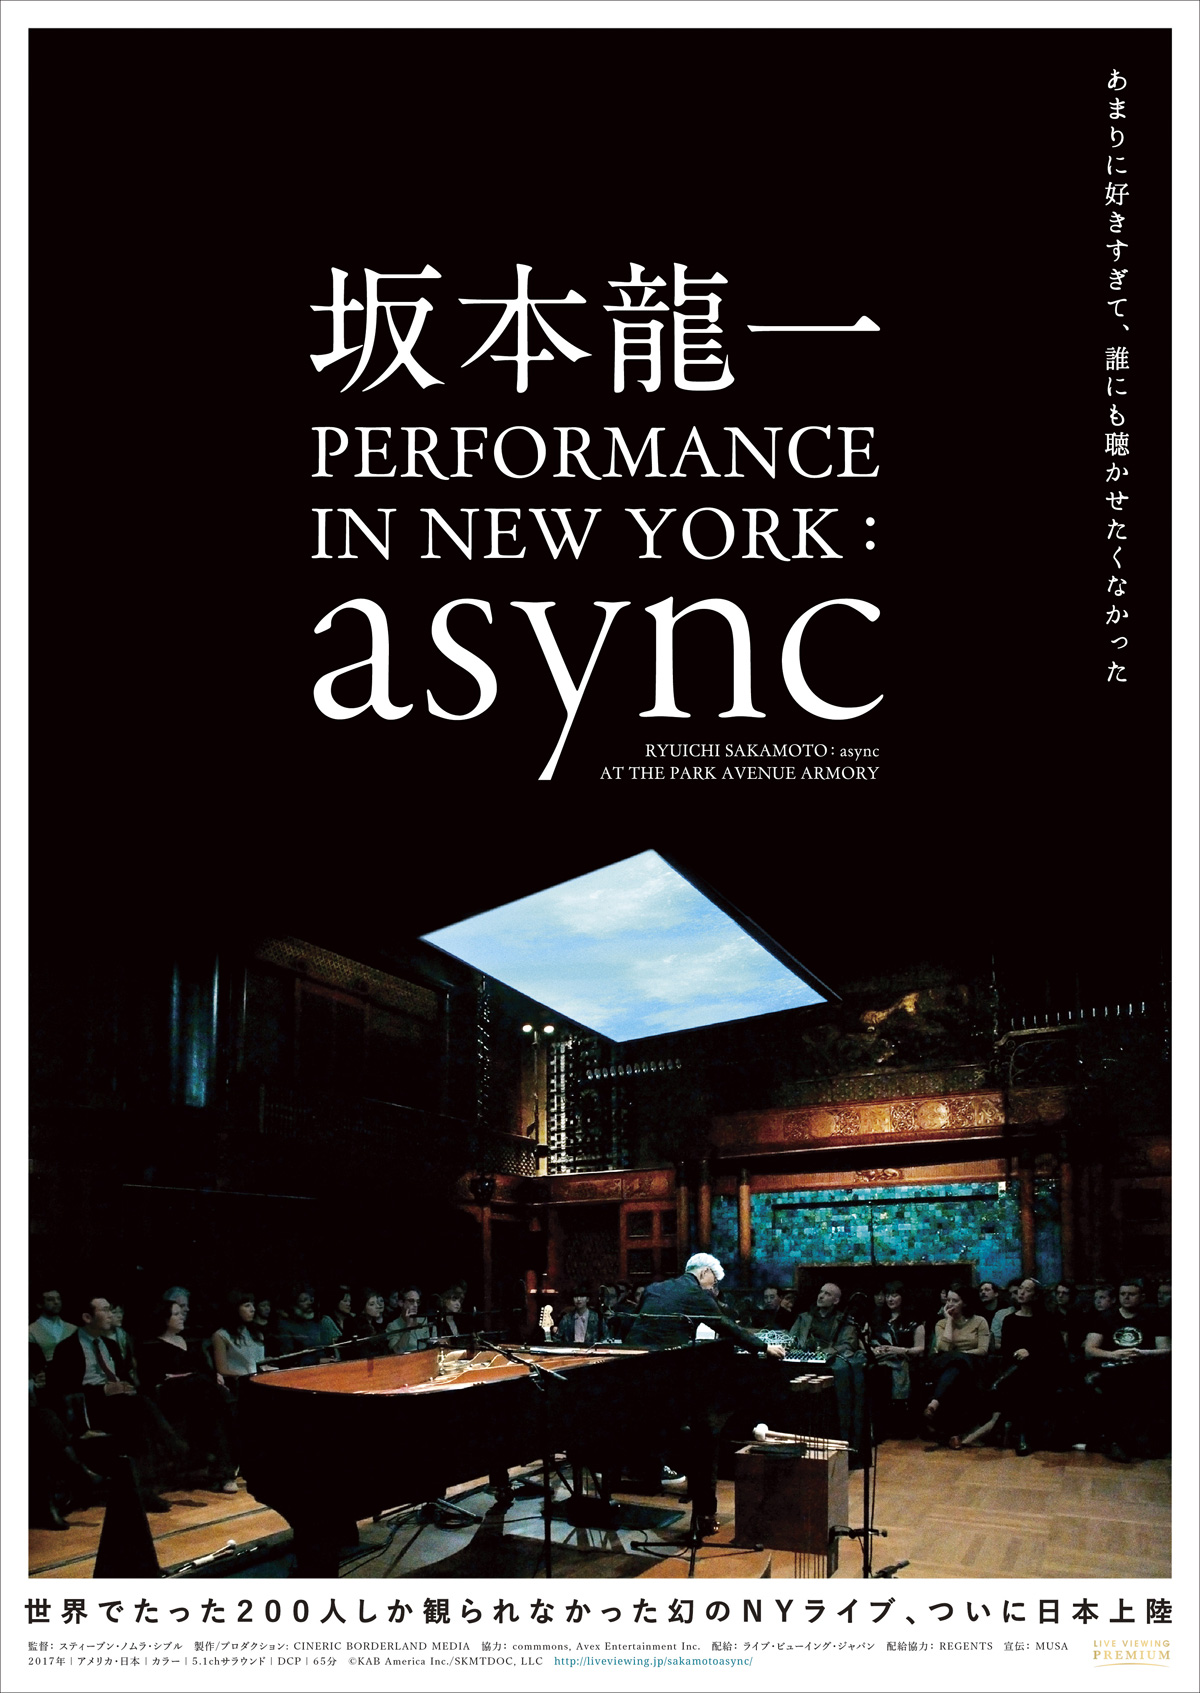 坂本龍一 PERFORMANCE IN NEW YORK : asyncの画像